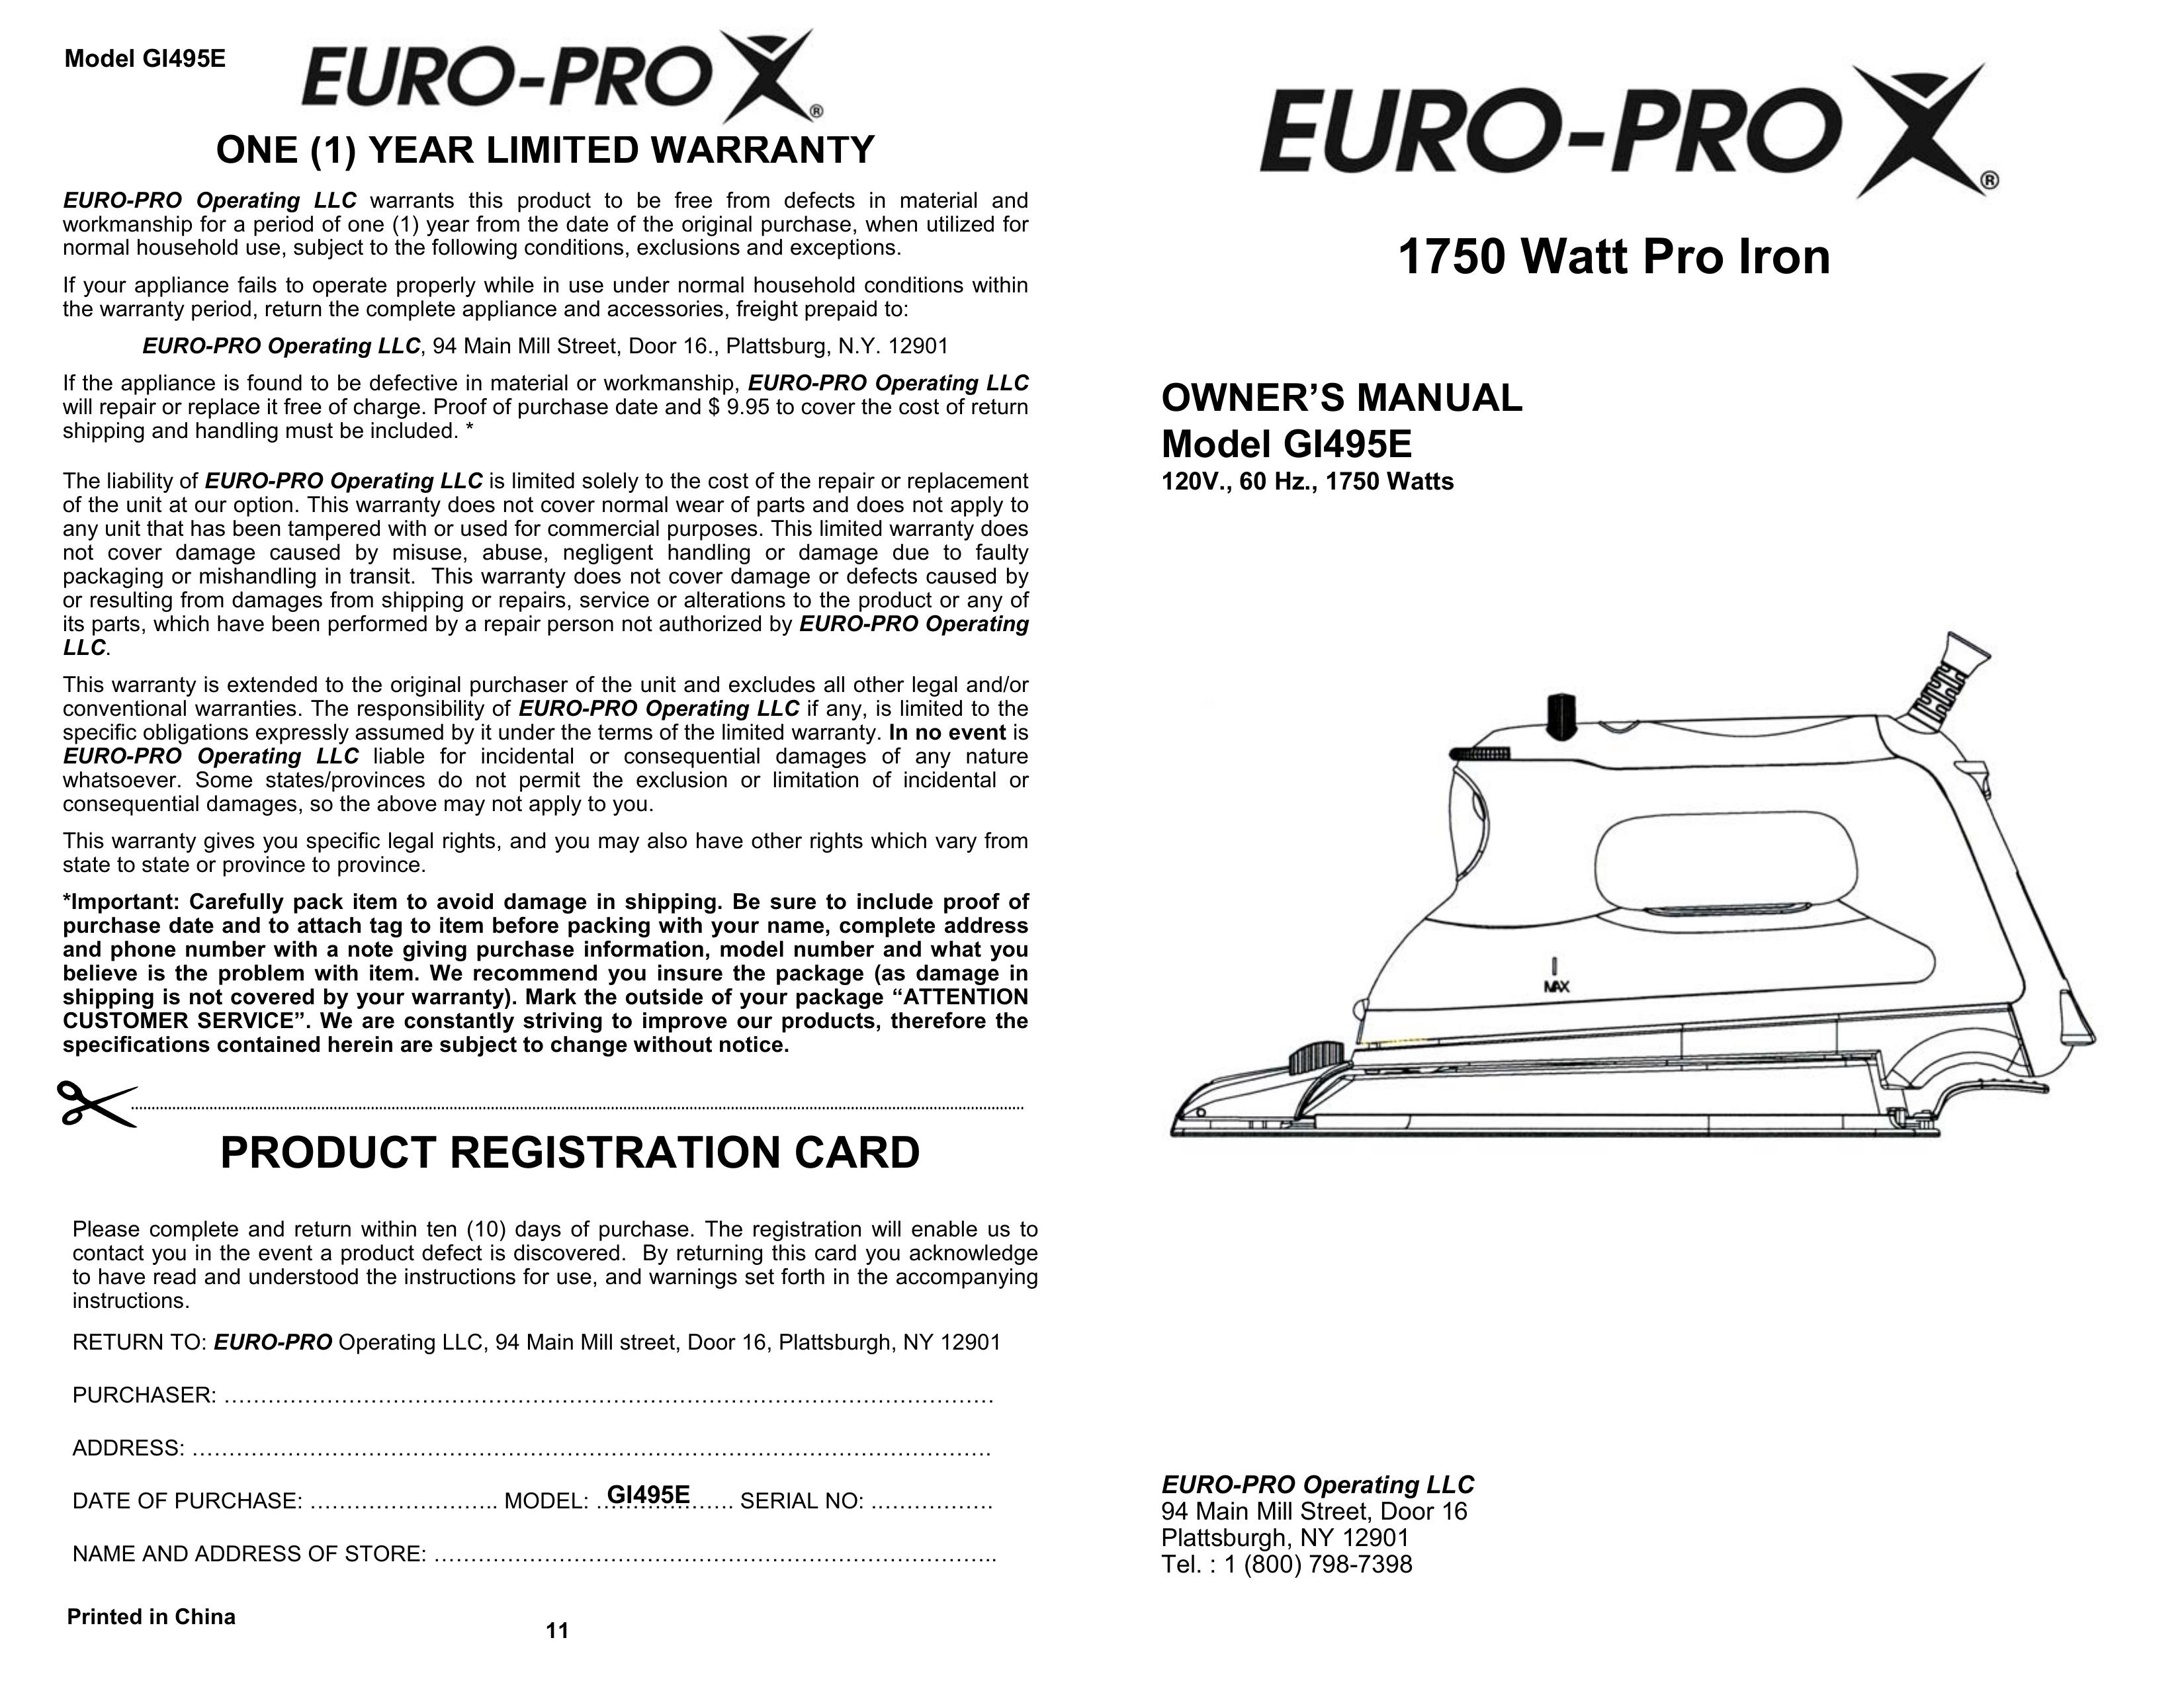 Euro-Pro GI495E Iron User Manual